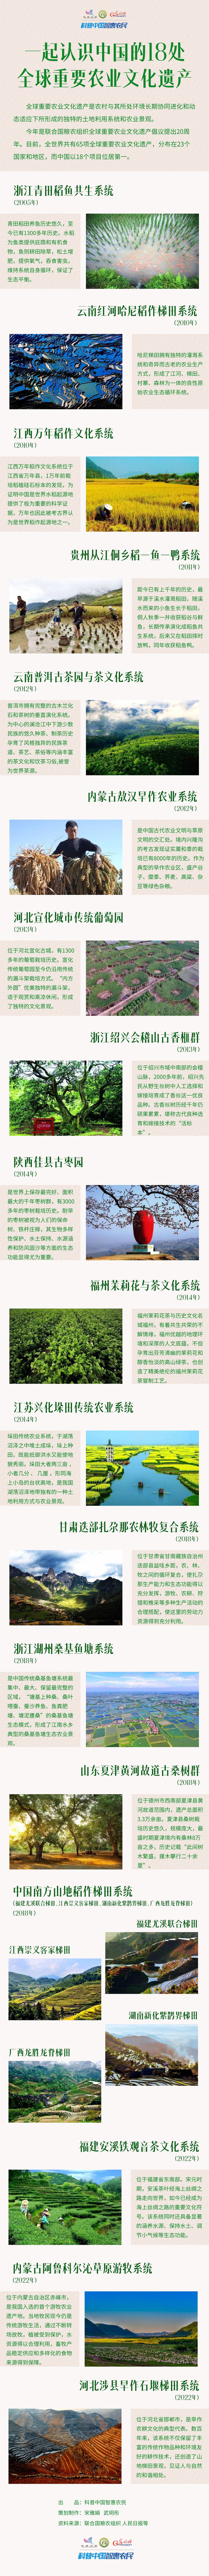 科普图解｜一起认识中国 的18处全球重要农业文化遗产